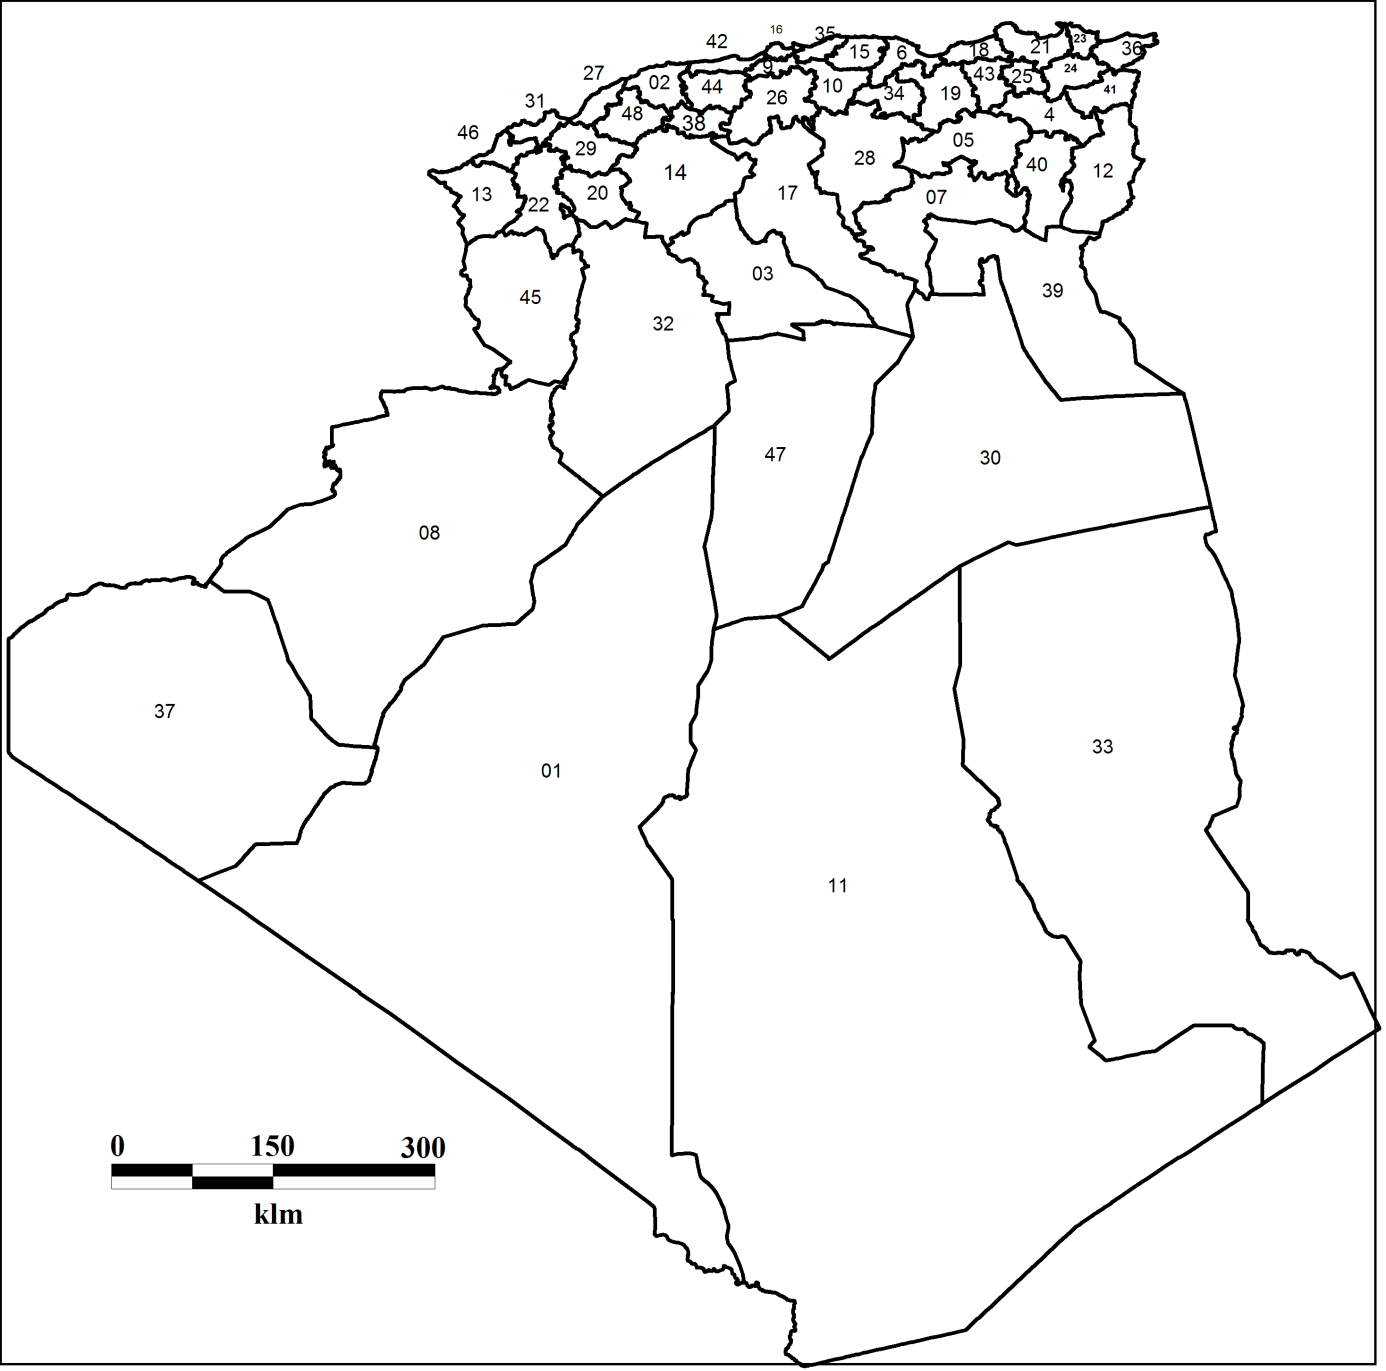 un tableau qui contient les wilayas de chaque region